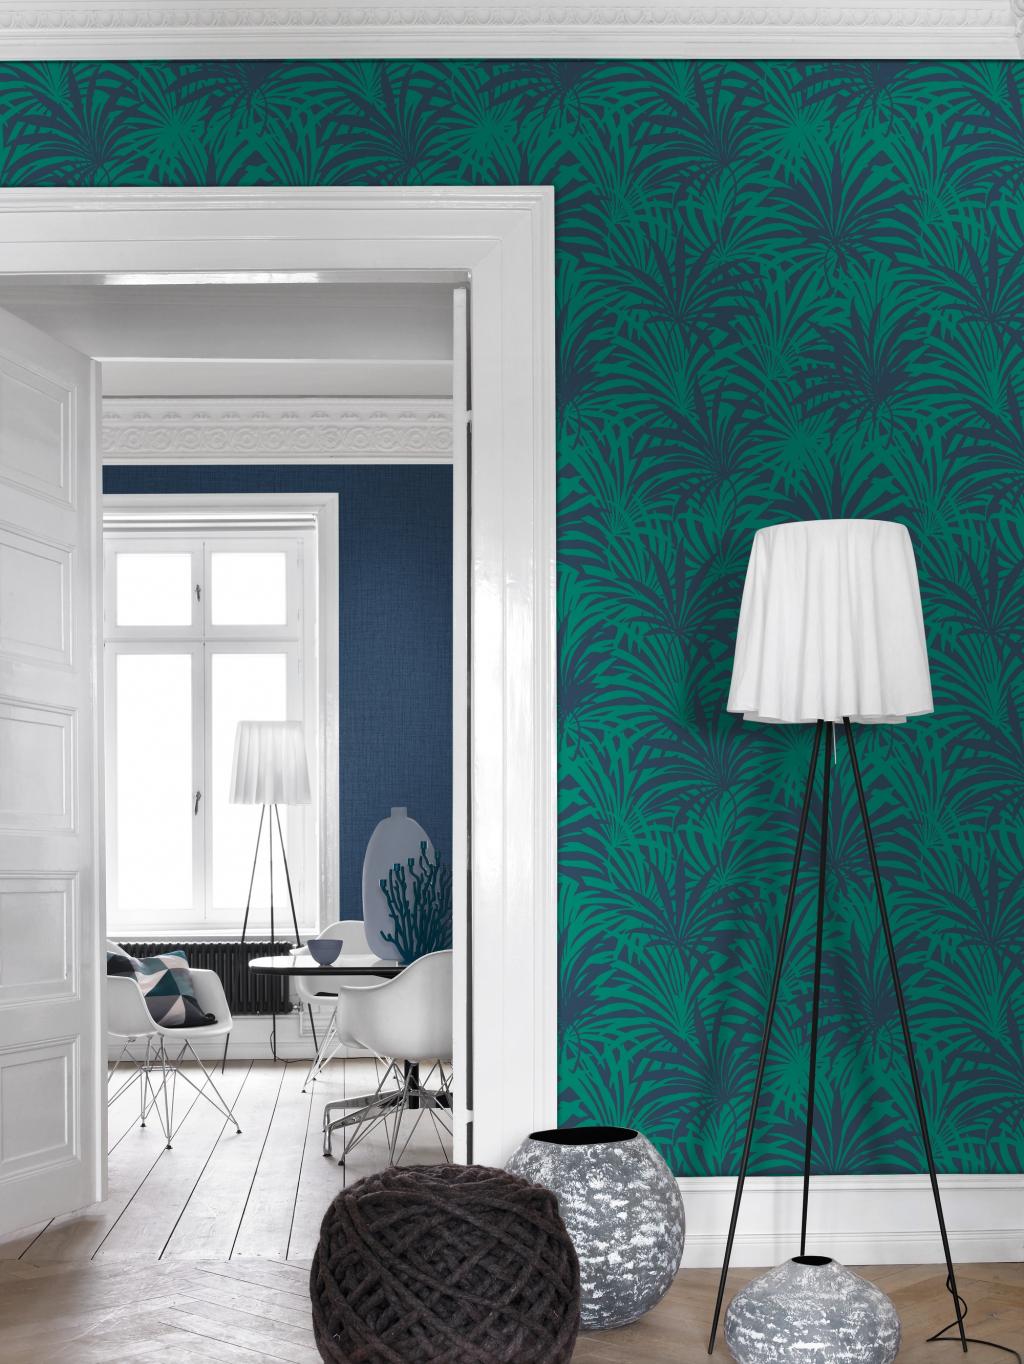 Wohnzimmer mit grüner Rasch-Vliestapete aus der Kollektion "Vanity Fair II"